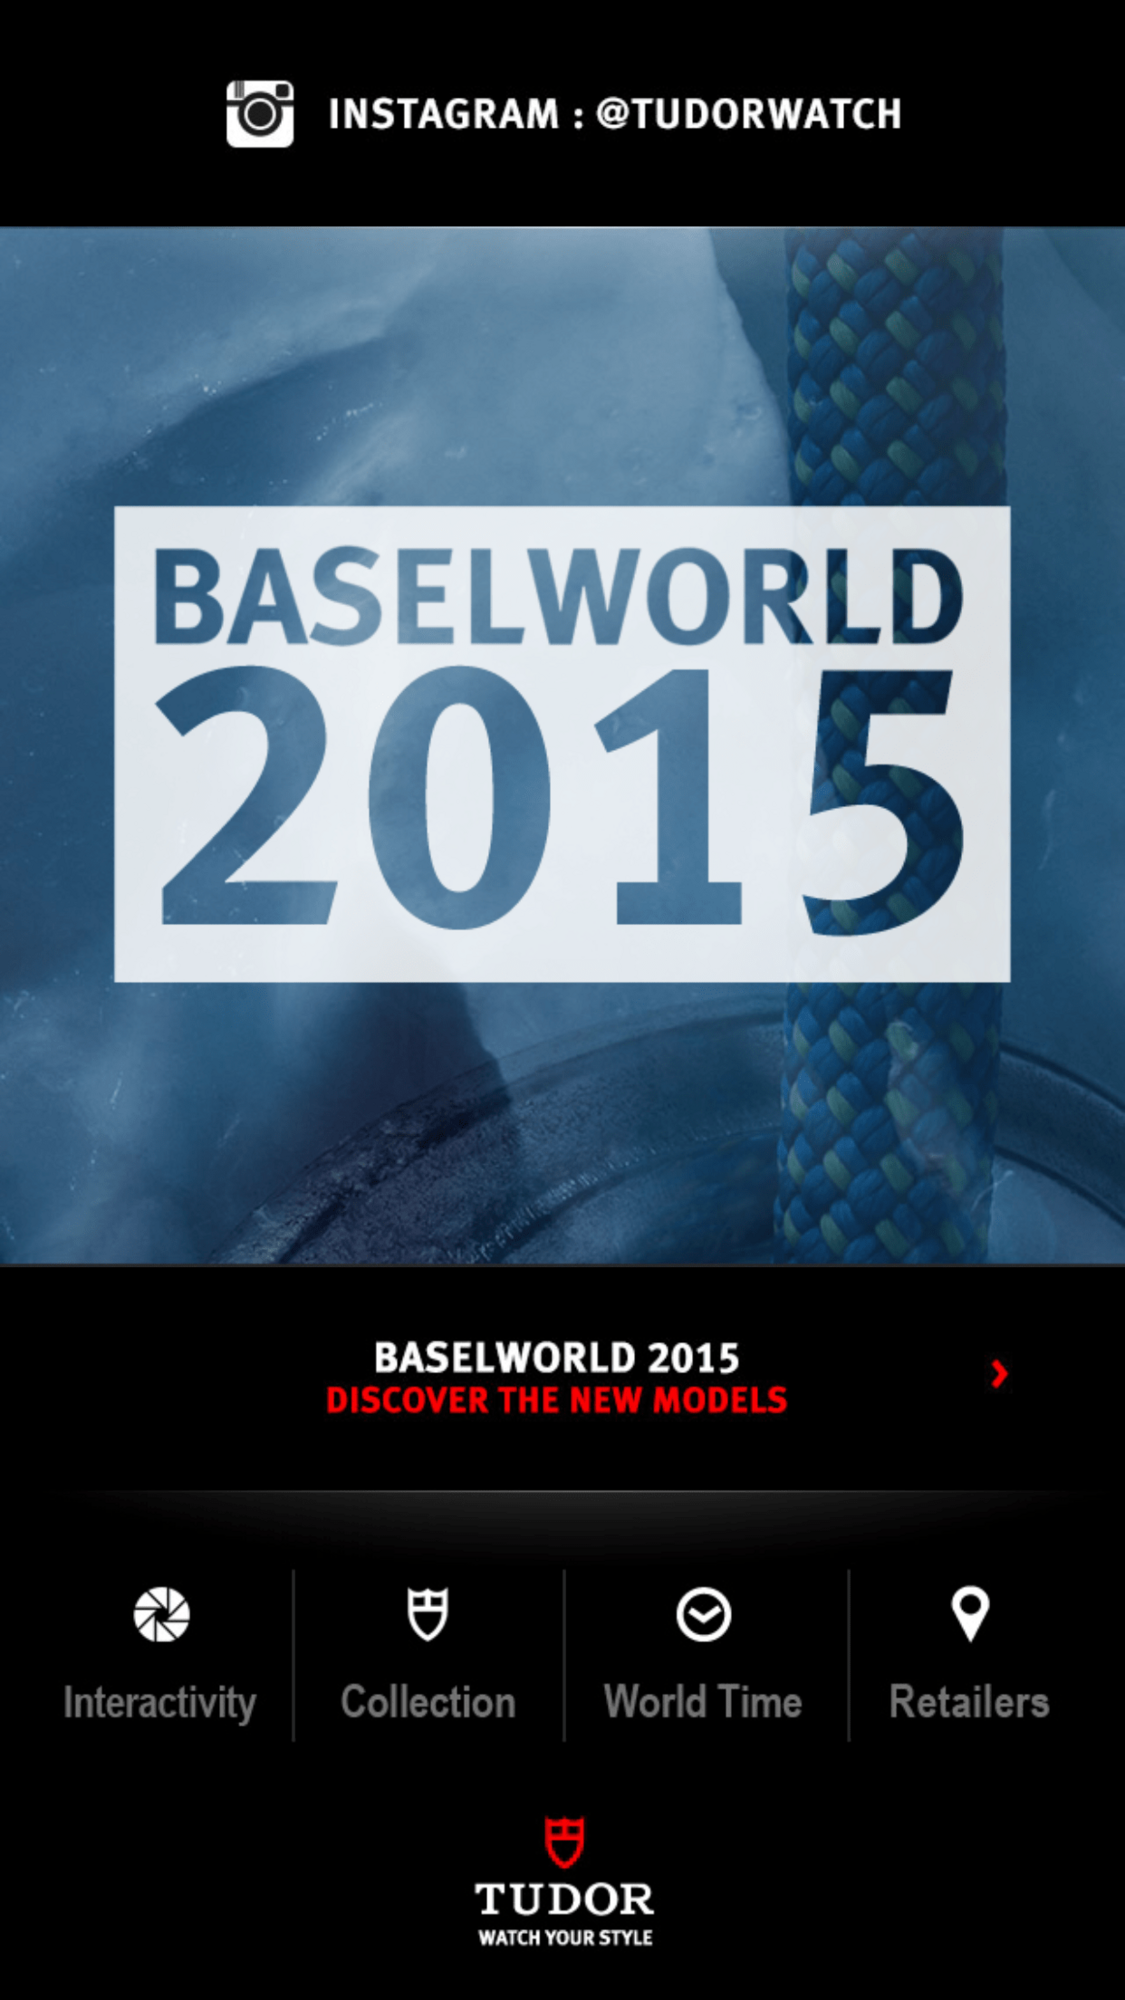 Tudor - Baselworld 2015